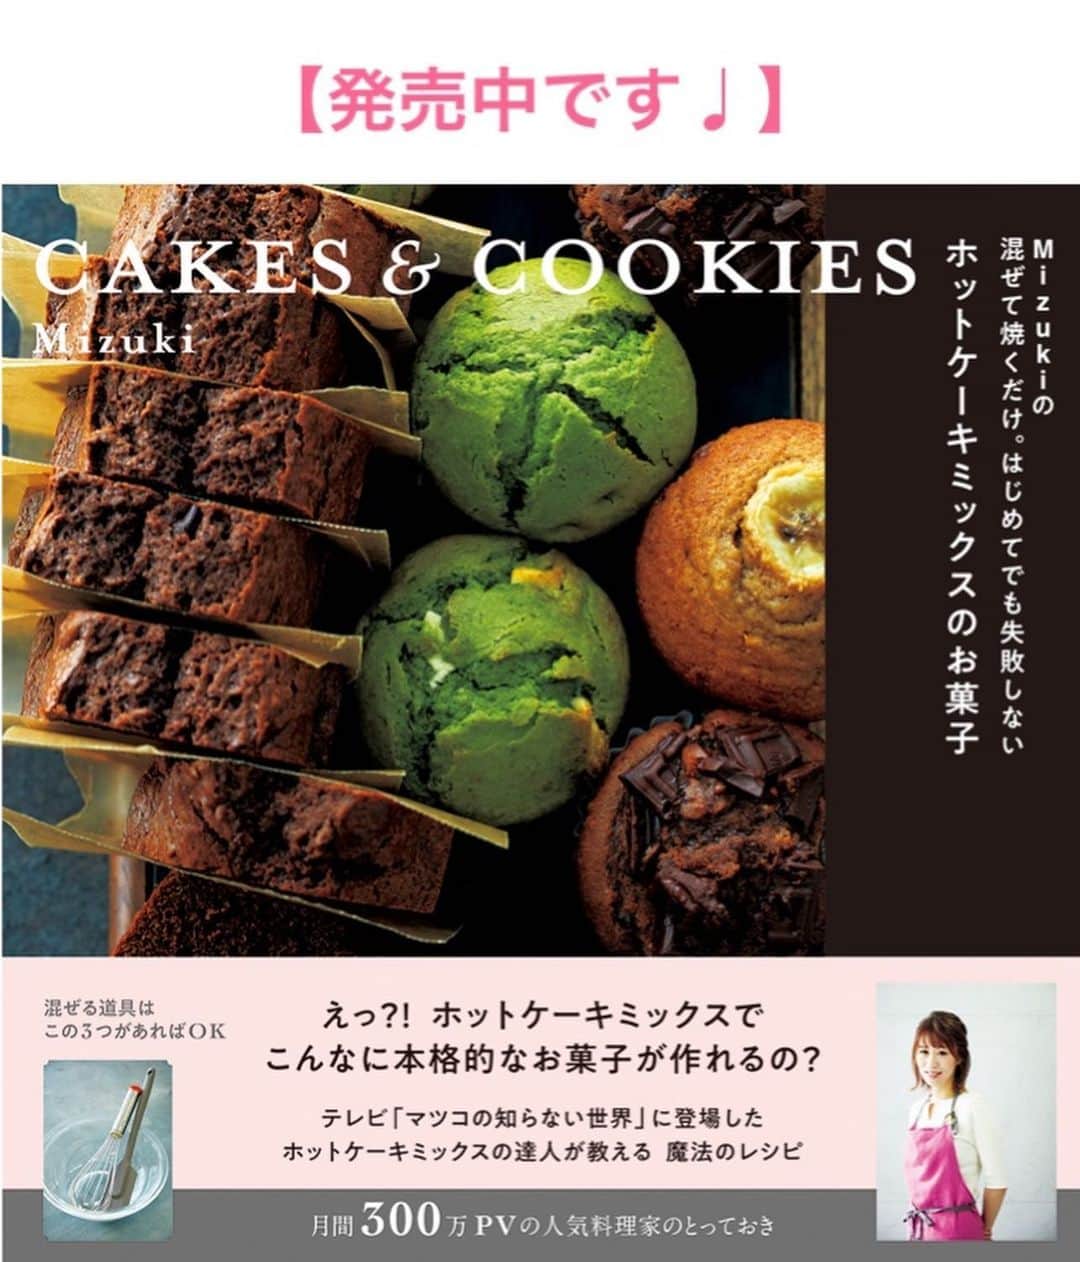 Mizuki【料理ブロガー・簡単レシピ】さんのインスタグラム写真 - (Mizuki【料理ブロガー・簡単レシピ】Instagram)「・﻿ 【レシピ】ーーーーーーーーーーーーー﻿ ♡煮込み3分♡トマトキーマカレー♡﻿ ーーーーーーーーーーーーーーーーーー﻿ ﻿ ﻿ ﻿ おはようございます(*^^*)﻿ ﻿ 今日ご紹介させていただくのは﻿ ささっとできるキーマカレー♡﻿ トマトを加えて旨味をプラスし﻿ より食べやすく仕上げました♩﻿ ﻿ 作り方は超簡単(*´艸`)﻿ さっと炒めて3分煮るだけ！﻿ 特別な材料も必要なく﻿ フライパンひとつで作れますよ♩﻿ ﻿ ﻿ ﻿ ーーーーーーーーーーーーーーーーーーーー﻿ 【2人分】﻿ 合びき肉...150g﻿ 玉ねぎ...1/2個﻿ トマト...1個﻿ サラダ油...小1﻿ カレー粉...小2﻿ ●水...80ml﻿ ●ケチャップ・ウスターソース...各大1﻿ ●砂糖・コンソメ...各小1/2﻿ 塩こしょう...少々﻿ ごはん・ゆで卵・パセリ...各適量﻿ ﻿ 1.玉ねぎはみじん切りにする。トマトは1〜2cm角に切る。﻿ 2.フライパンにサラダ油を入れて中火で熱し、ひき肉と玉ねぎを炒めて塩こしょうを振る。ひき肉に火が通ったら、トマトとカレー粉を加えて更に1分炒める。﻿ 3.●を加え、混ぜながら約3分、とろみがつくまで煮る。﻿ 4.器にごはんを盛って3をかけ、ゆで卵とパセリをトッピングする。﻿ ーーーーーーーーーーーーーーーーーーーー﻿ ﻿ ﻿ ﻿ 《ポイント》﻿ ♦︎辛さは控えめです☆辛いのがお好きな方はカレー粉を増量して下さい♩﻿ ﻿ ﻿ ﻿ ﻿ ﻿ ﻿ ﻿ 🔻入荷しました🔻﻿ ストーリーにリンク貼っています🙇‍♀️﻿ ＿＿＿＿＿＿＿＿＿＿＿＿＿＿＿＿＿＿＿﻿ 📕\ \ 新刊発売中 / /📕﻿ 簡単・時短！ 毎日のごはんがラクになる﻿ ✨🦋 【 #Mizukiの今どき和食 】🦋✨﻿ ＿＿＿＿＿＿＿＿＿＿＿＿＿＿＿＿＿＿＿﻿ ﻿ なるべく少ない材料で﻿ 手間も時間も省きながら﻿ 簡単にできるおいしい和食レシピ♩﻿ 簡単に失敗なくマスターできる一冊で﻿ もっと気軽に、カジュアルに﻿ 和食を楽しんで下さいね(*^^*)﻿ ﻿ ﻿ ーーー ⭐️PART.1 メインおかず ⭐️ーーー﻿ 素材別にレシピをご紹介しています♩﻿ 和食の定番から新定番まで﻿ どれも押さえておきたいメニューばかり。﻿ 肉じゃがはフライパンで！焼き豚はレンジで！﻿ ぶり大根は切り身を使って手軽に作ります♩﻿ ﻿ ーーー ☘️PART.2 サブおかず ☘️ーーー﻿ 年中手に入るお手頃野菜と﻿ 乾物や大豆、こんにゃくなどを使った﻿ 副菜レシピをたっぷり掲載！！﻿ 普段SNSではメインおかずばかりなので﻿ 本では副菜にも力を入れています(*^^*)﻿ ﻿ ーーー 🌸PART.3 ごはんと汁物 🌸ーーー﻿ ささっと作れる丼と麺、﻿ みんなで食べたいいなり寿司や﻿ 手巻きごはんもご紹介！﻿ 複数の炊き込みごはんと﻿ 味噌汁&和風スープも盛りだくさん！﻿ ﻿ ﻿ 各レシピのポイントは﻿ 【写真付きで丁寧に解説】﻿ 副菜レシピもたっぷりなので﻿ 【メインページに副菜メモもつけました】﻿ ＊このメインにはこの副菜が合いますよ〜﻿ という献立の提案です(*^^*)﻿ 【その他コラムも充実】﻿ 全127品中ほぼ全て﻿ 【本だけのレシピです！】﻿ ＿＿＿＿＿＿＿＿＿＿＿＿＿＿＿＿＿＿＿﻿ ﻿ ﻿ ﻿ ﻿ ﻿ ＿＿＿＿＿＿＿＿＿＿＿＿＿＿＿＿＿﻿ 🎀発売中🎀﻿ 【#ホットケーキミックスのお菓子 】﻿ ﻿ 一冊まるっとホケミスイーツ♩﻿ 普段のおやつから﻿ 特別な日にも使えるレシピを﻿ この一冊に詰め込みました(*^^*)﻿ ホットケーキミックスを使えば﻿ 簡単に本格的なお菓子が作れますよ♡﻿ ＿＿＿＿＿＿＿＿＿＿＿＿＿＿＿＿＿﻿ ﻿ ⭐️ストーリー、ハイライト、プロフ画面に﻿ 本のURLを貼らせていただいております♩﻿ →(@mizuki_31cafe )﻿ ﻿ ﻿ ﻿ ﻿ #ひき肉#トマト#キーマカレー#ドライカレー#うちで過ごそう#おうち時間#Mizuki#簡単レシピ#時短レシピ#節約レシピ#料理#レシピ#フーディーテーブル#マカロニメイト#おうちごはん#デリスタグラマー#料理好きな人と繋がりたい#おうちごはん#lover#foodpic#follow#cooking#recipe#lin_stagrammer#stayhome#トマトキーマカレーm」6月3日 7時11分 - mizuki_31cafe